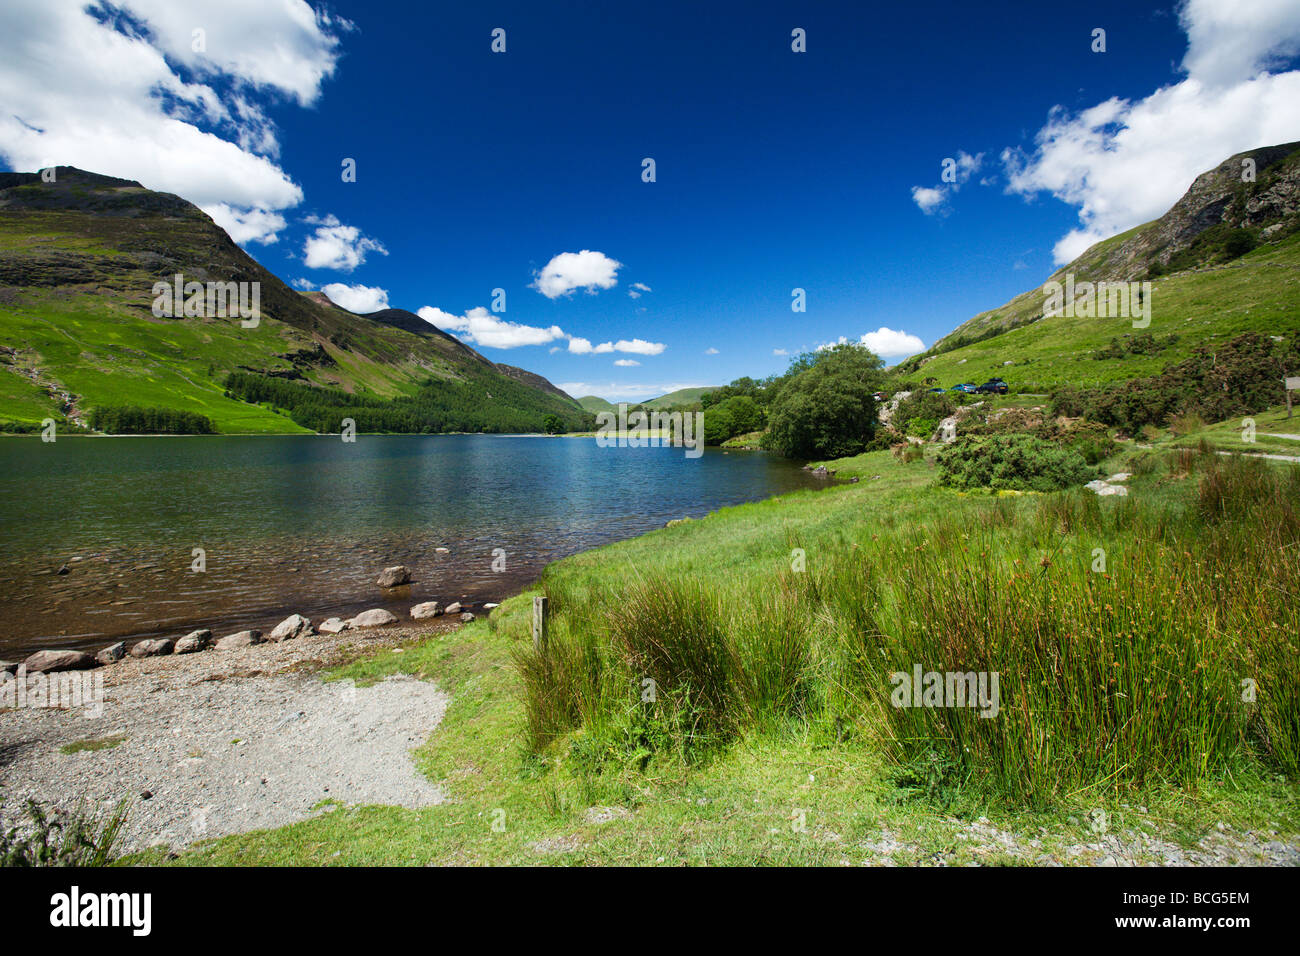 Le sentier du littoral du lac Buttermere autour du lac, 'le Lake District' Cumbria England UK Banque D'Images